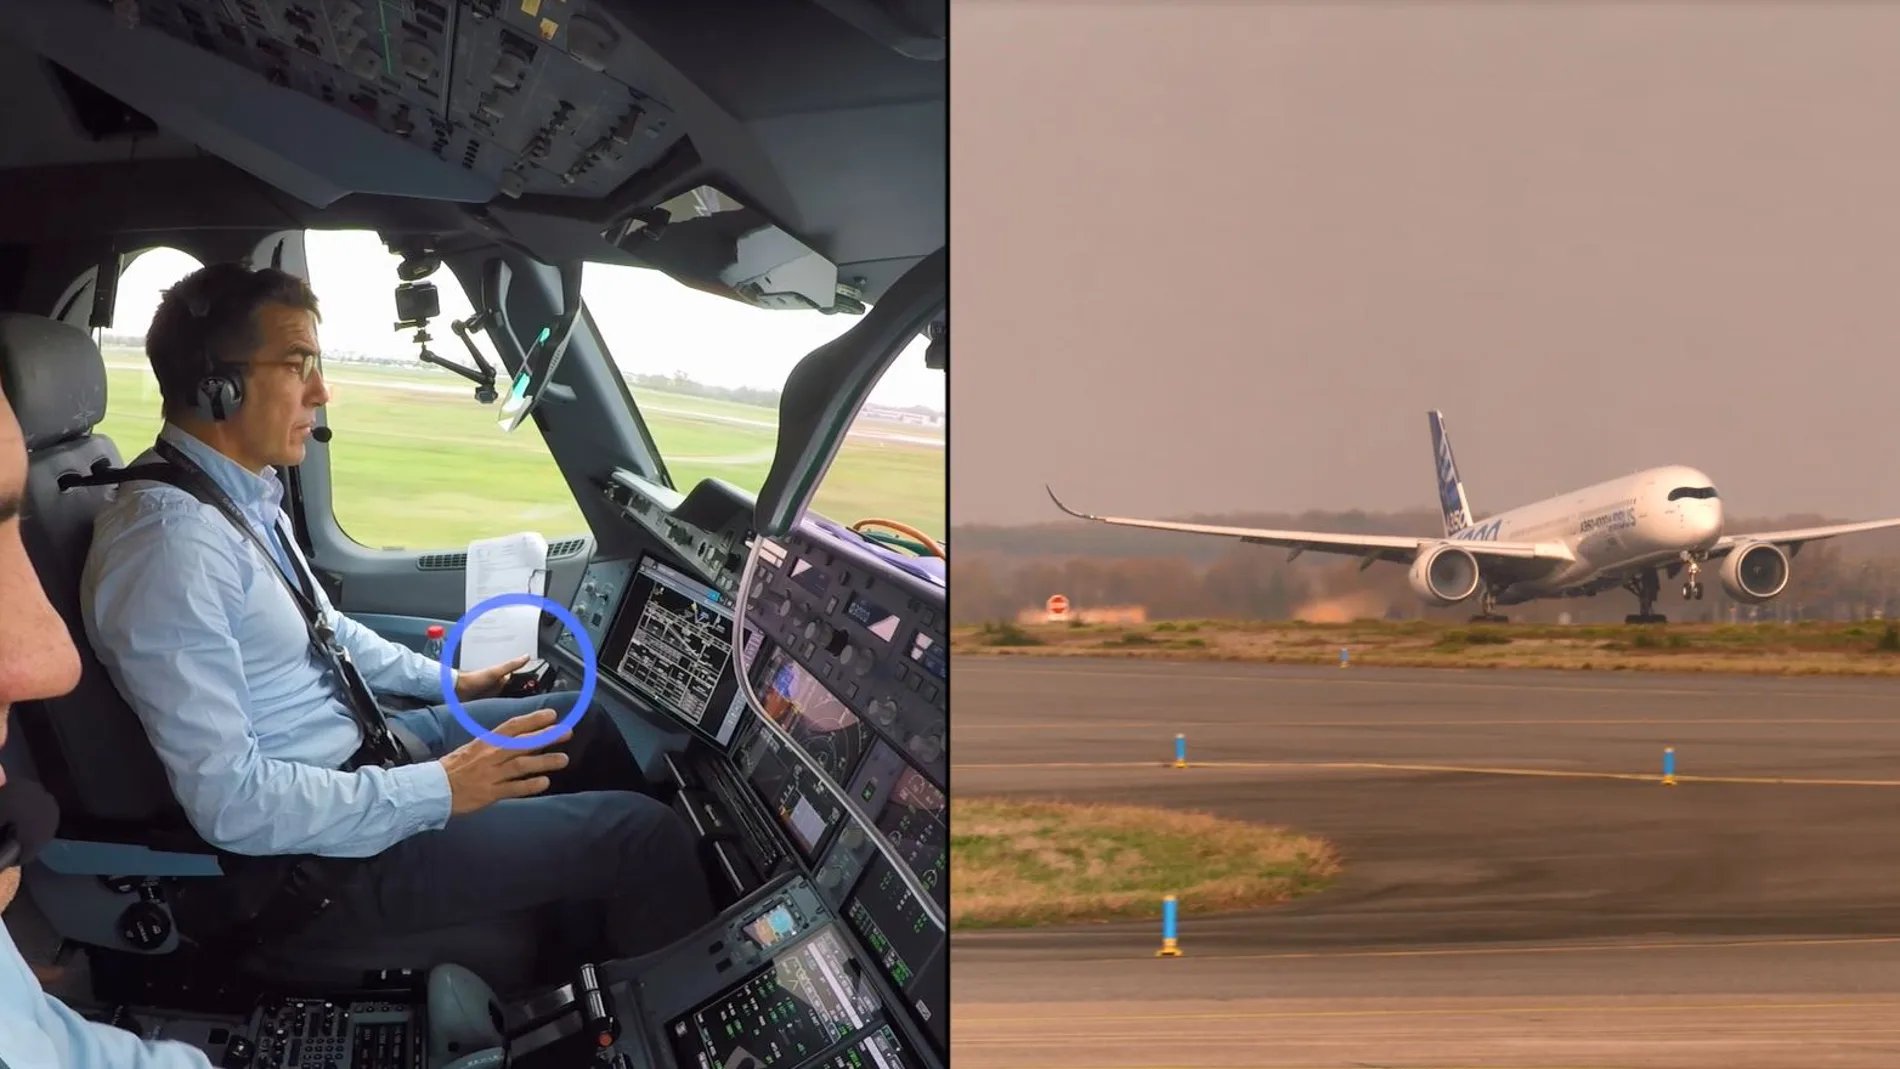 A la izquierda, una cabina de avión con dos pilotos al mando, a la derecha un avión en la pista de despegue